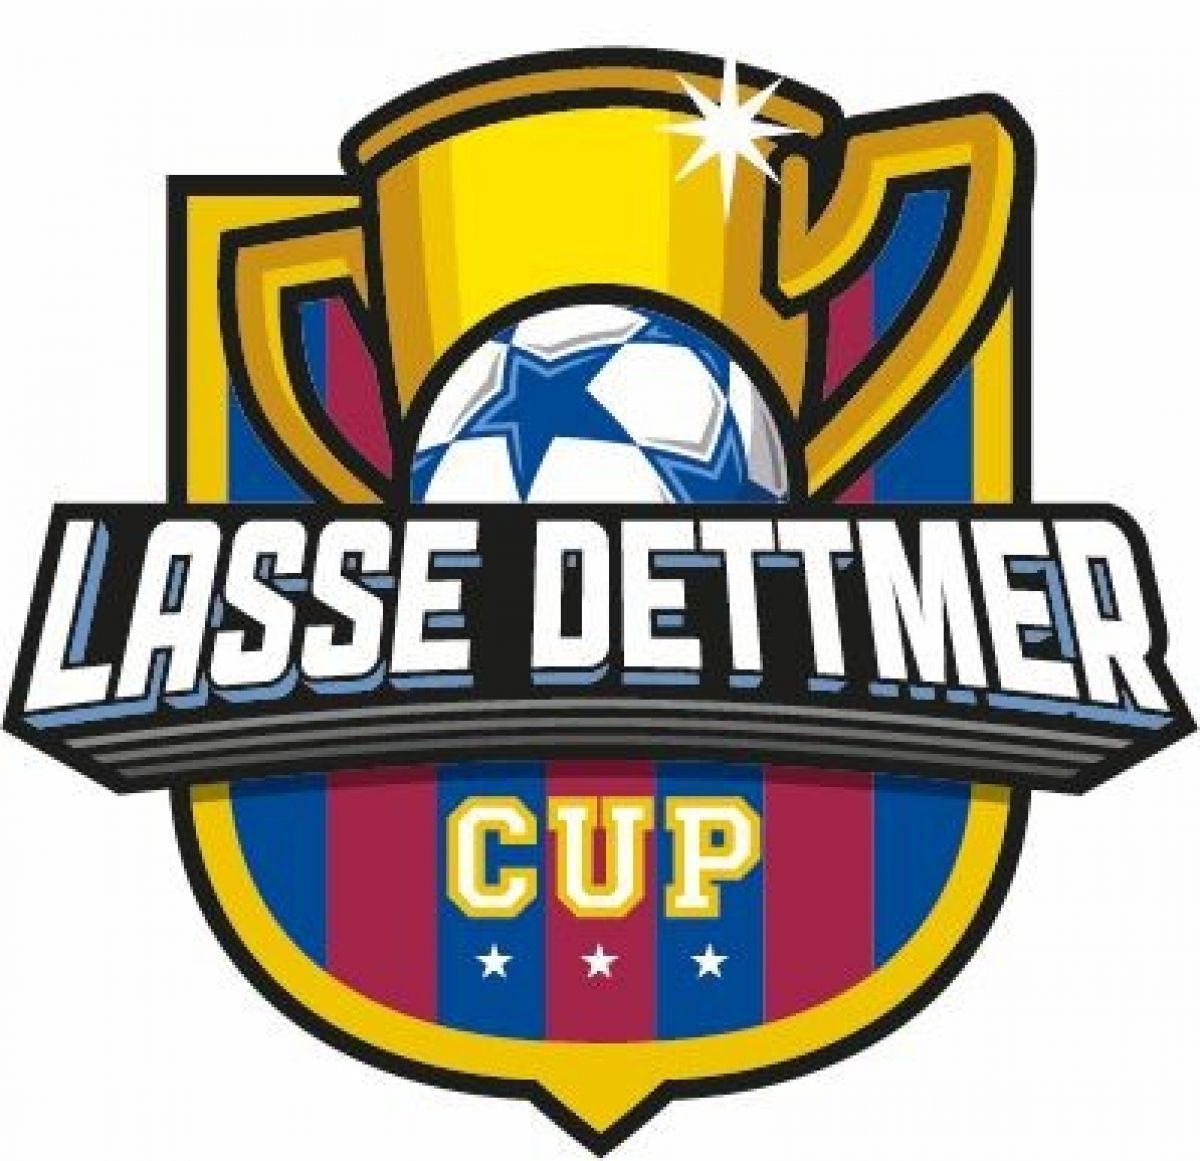 Die dritte Auflage des Lasse Dettmer-Cups findet am 14. Mai in Olpe statt. von privat